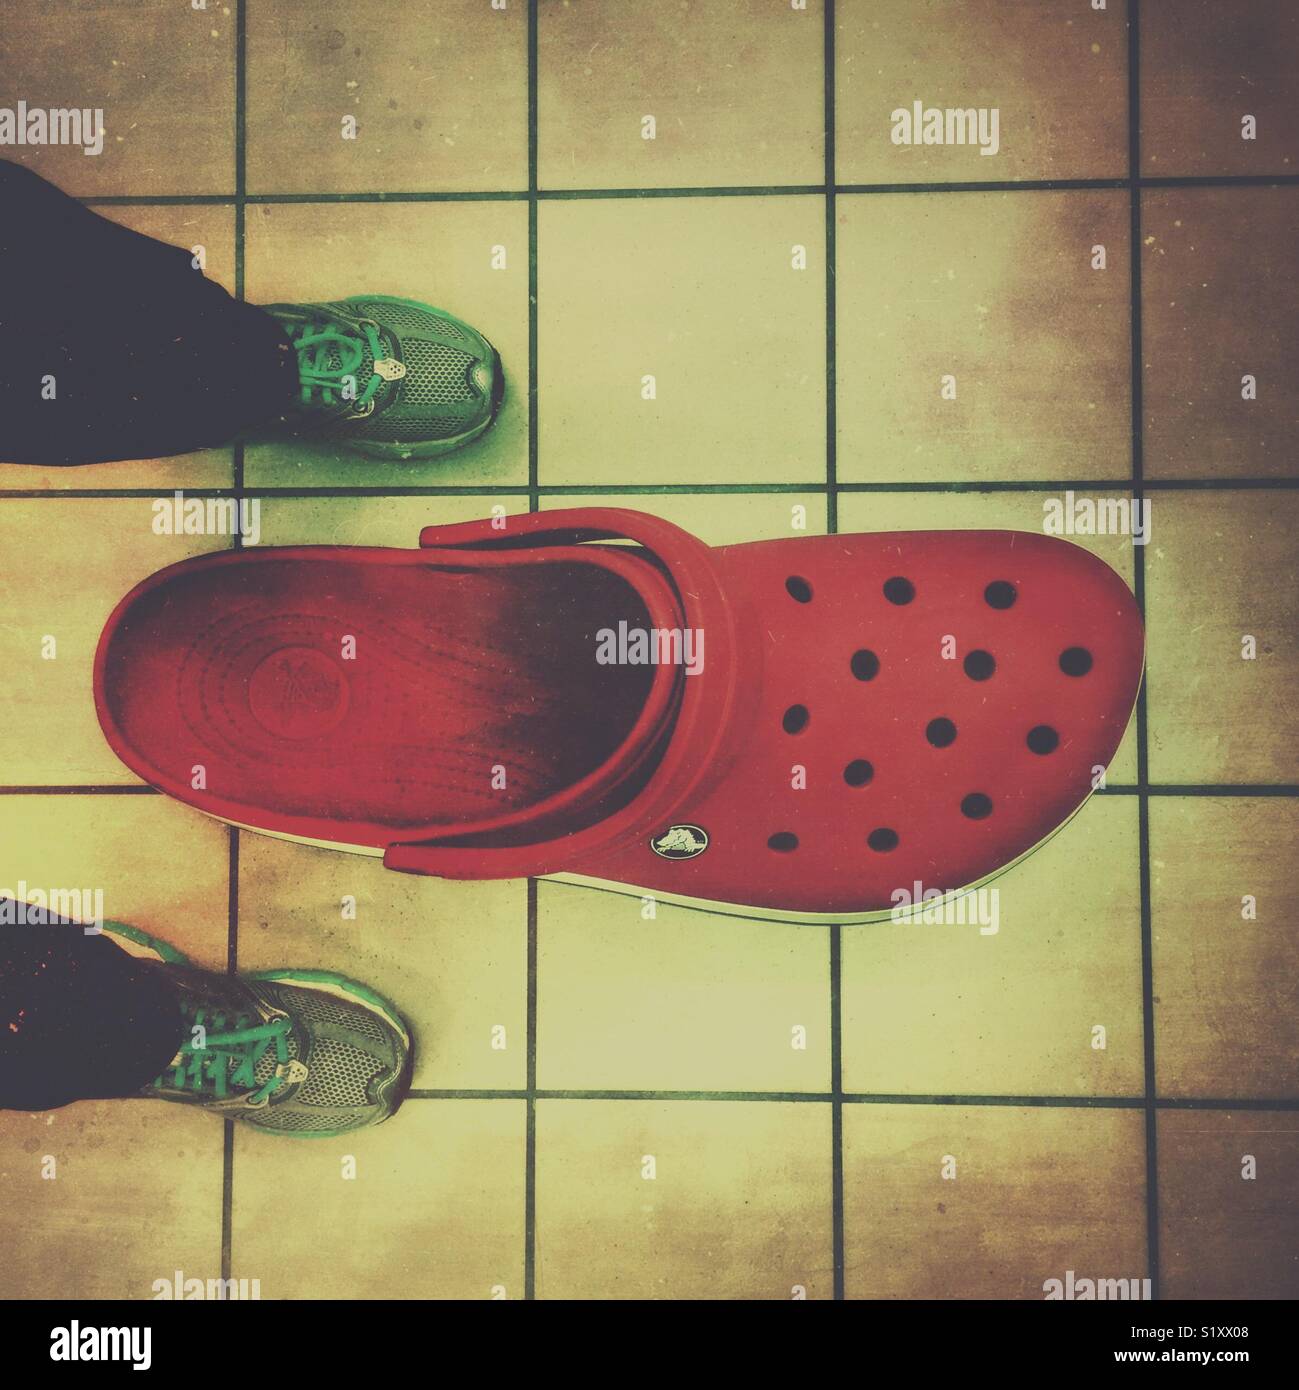 Giant Crocs shoe Stock Photo - Alamy